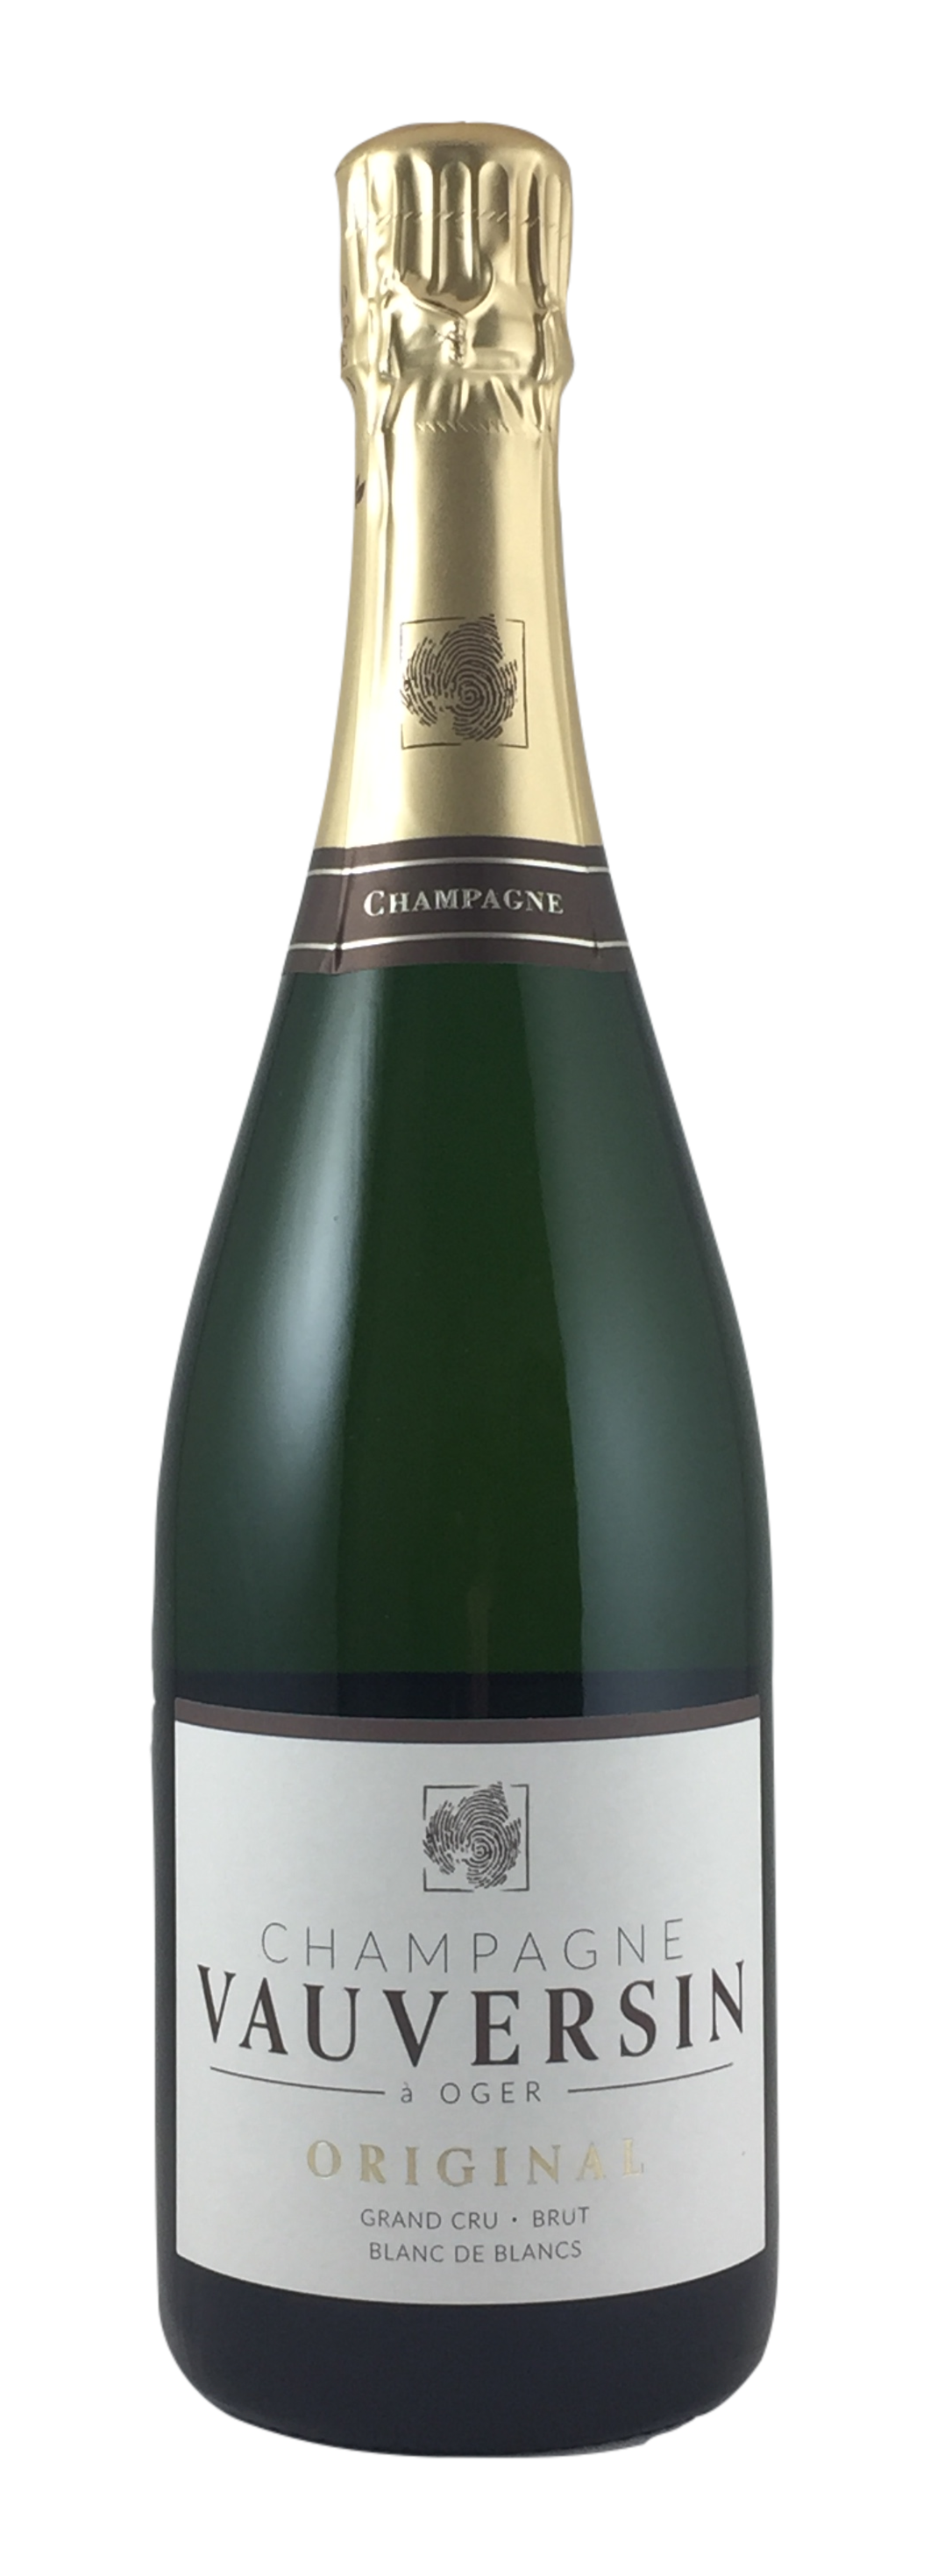 Champagne Vauversin - ORIGINAL Grand Cru brut